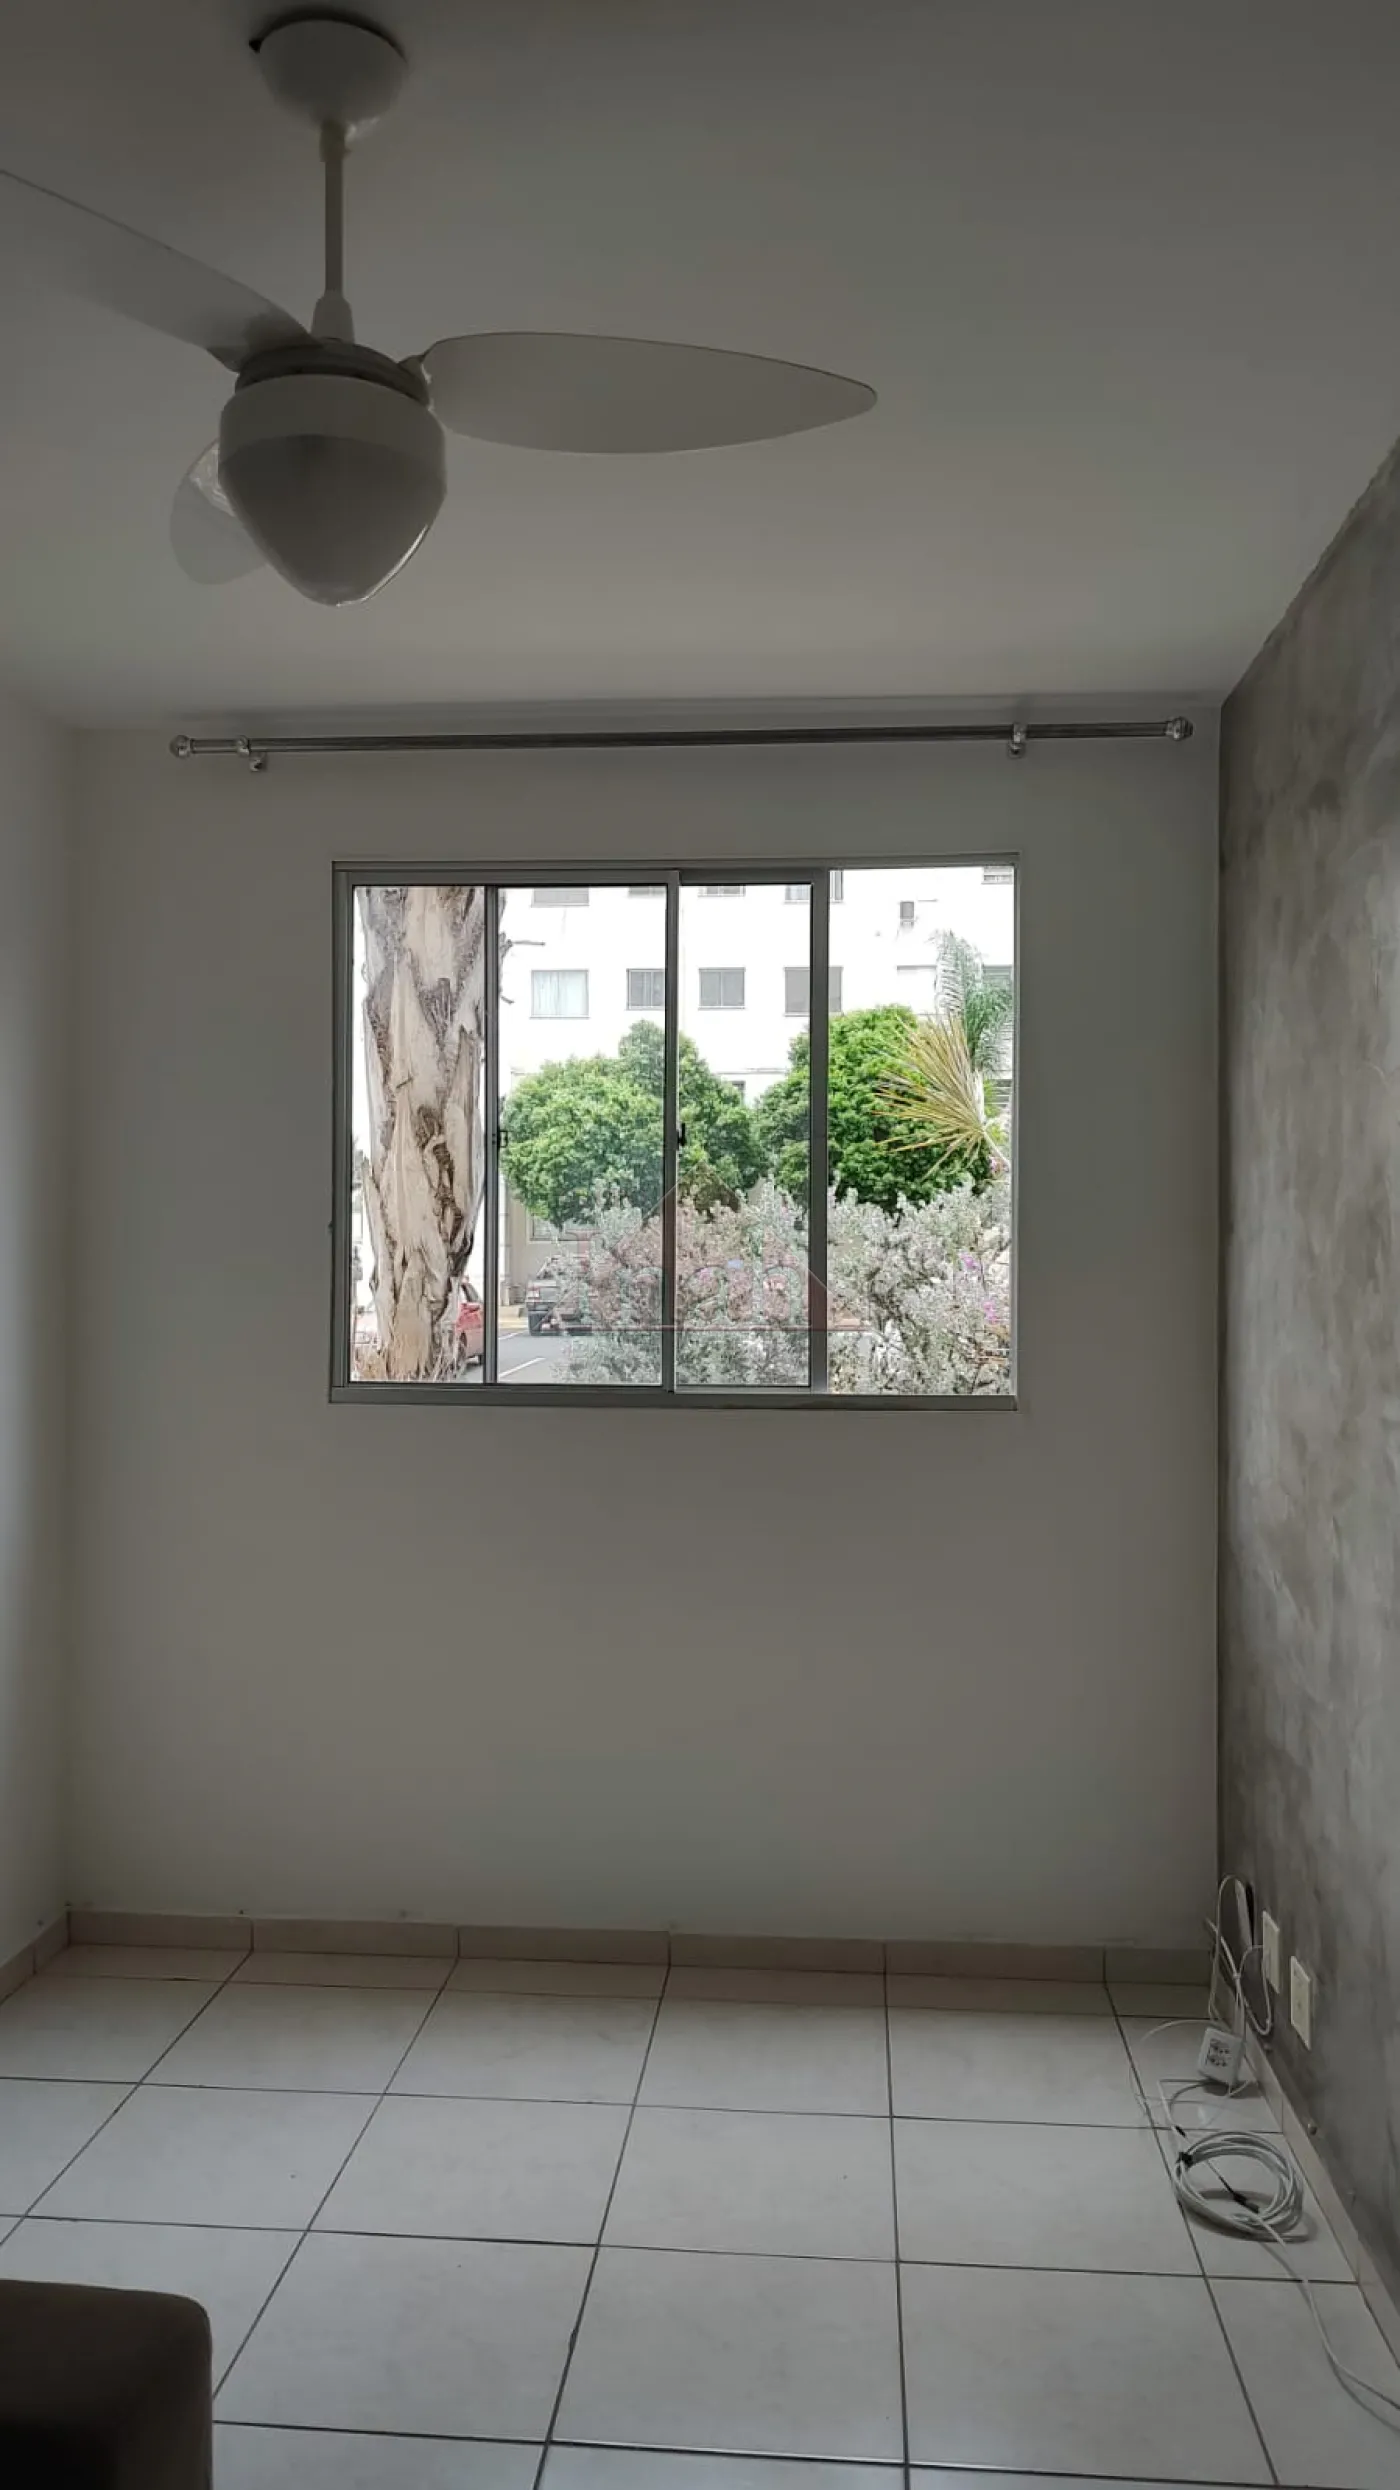 Alugar Apartamentos / Apartamento em Ribeirão Preto R$ 1.100,00 - Foto 1